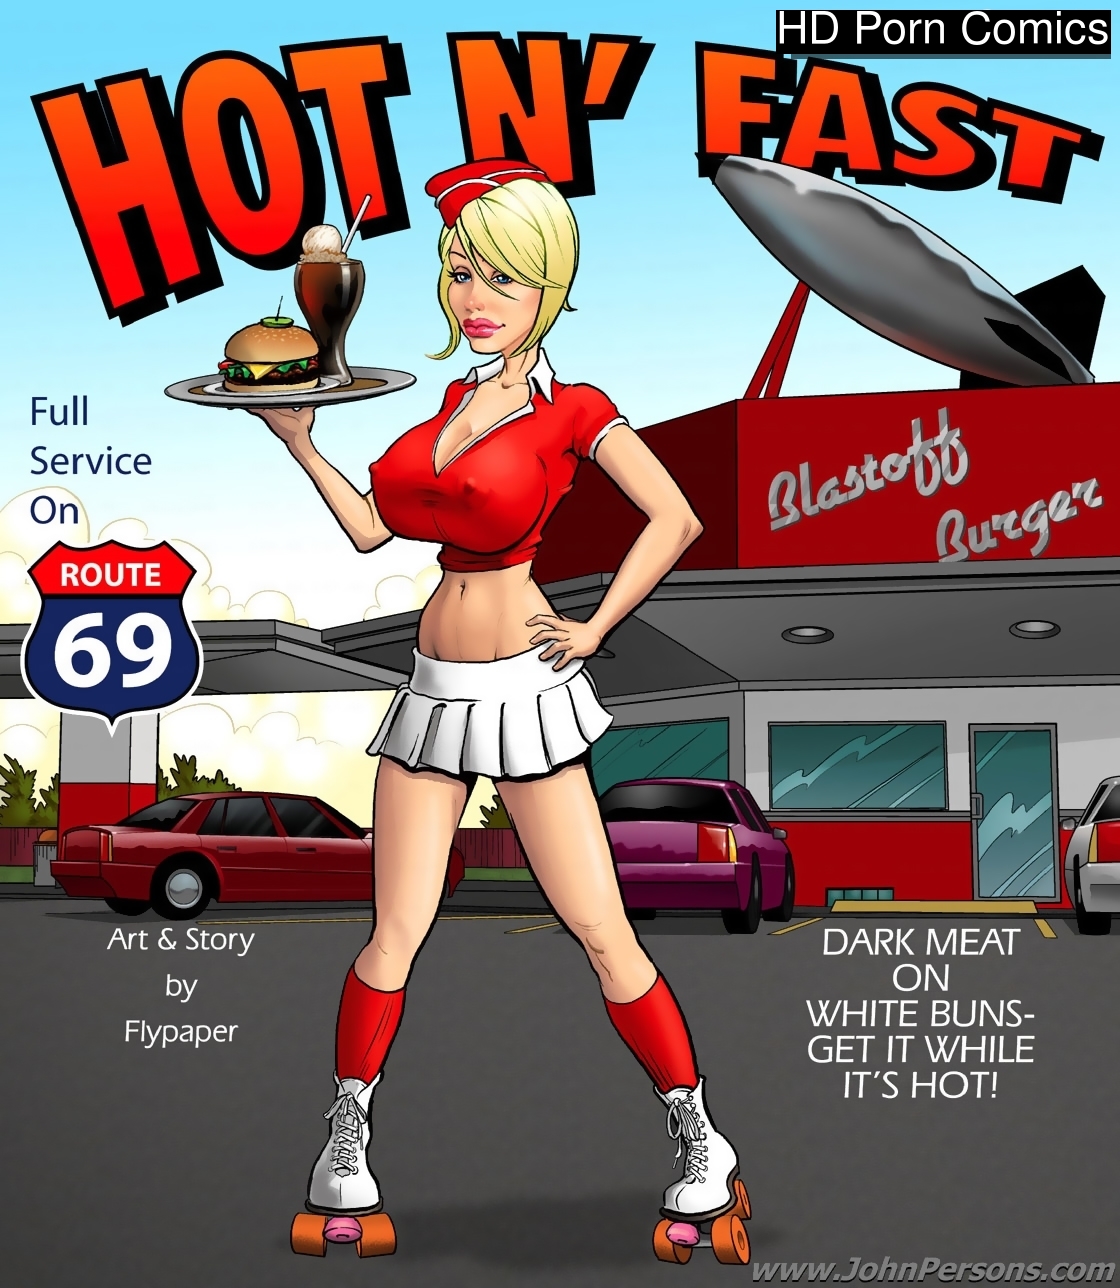 Sax Xxx Hd Fasat Sax - Hot And Fast Sex Comic | HD Porn Comics